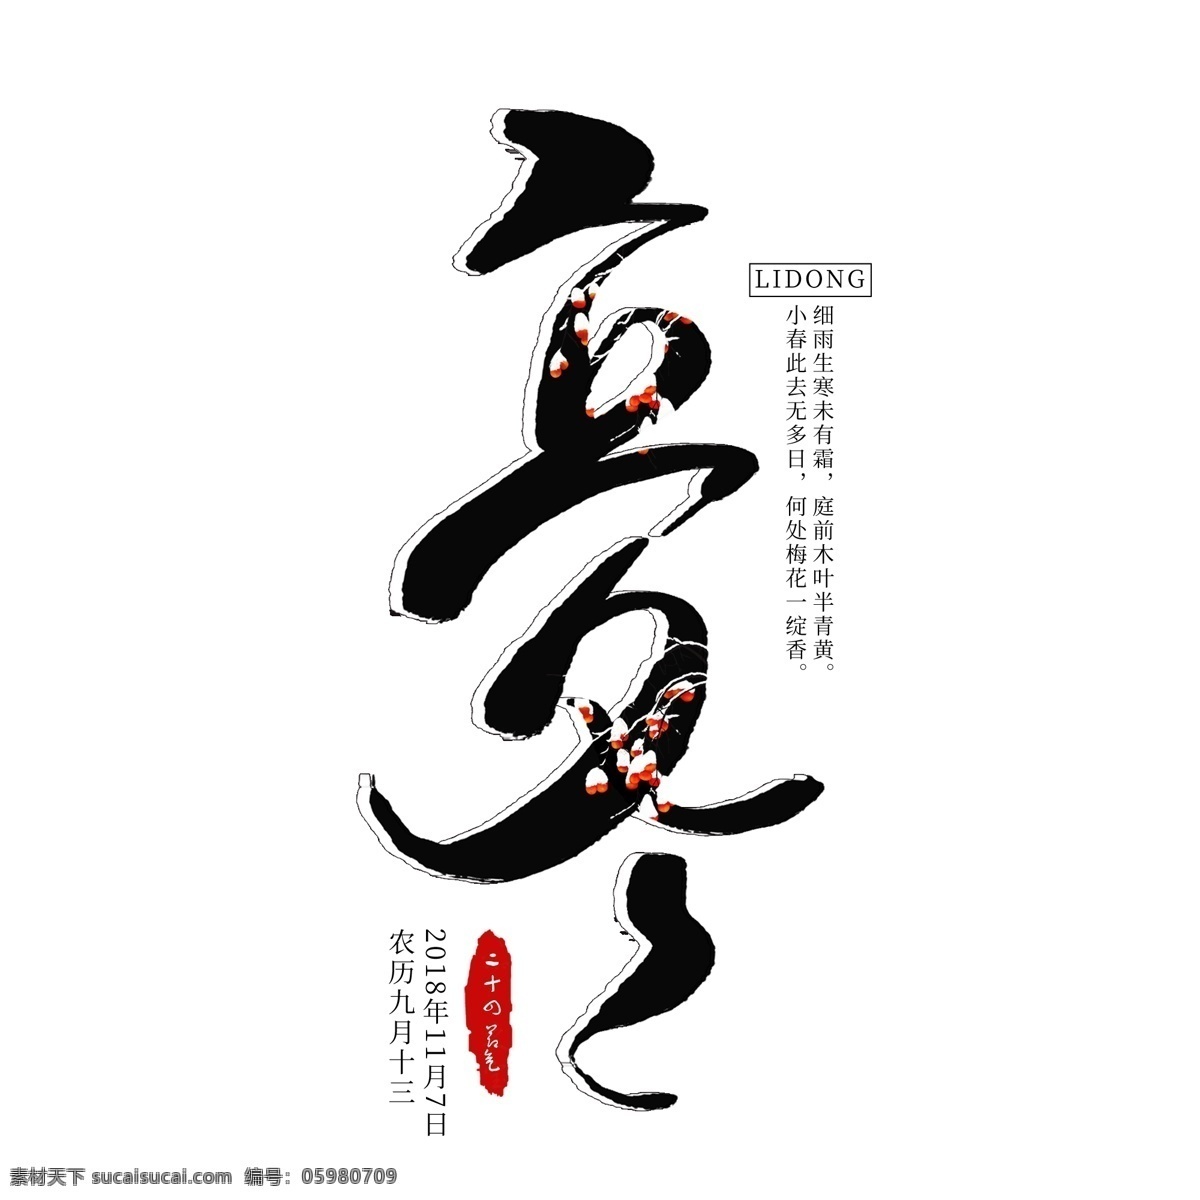 立冬 创意 艺术 字 二十四节气 立冬节气 节气 冬天 中国传统节气 传统节气